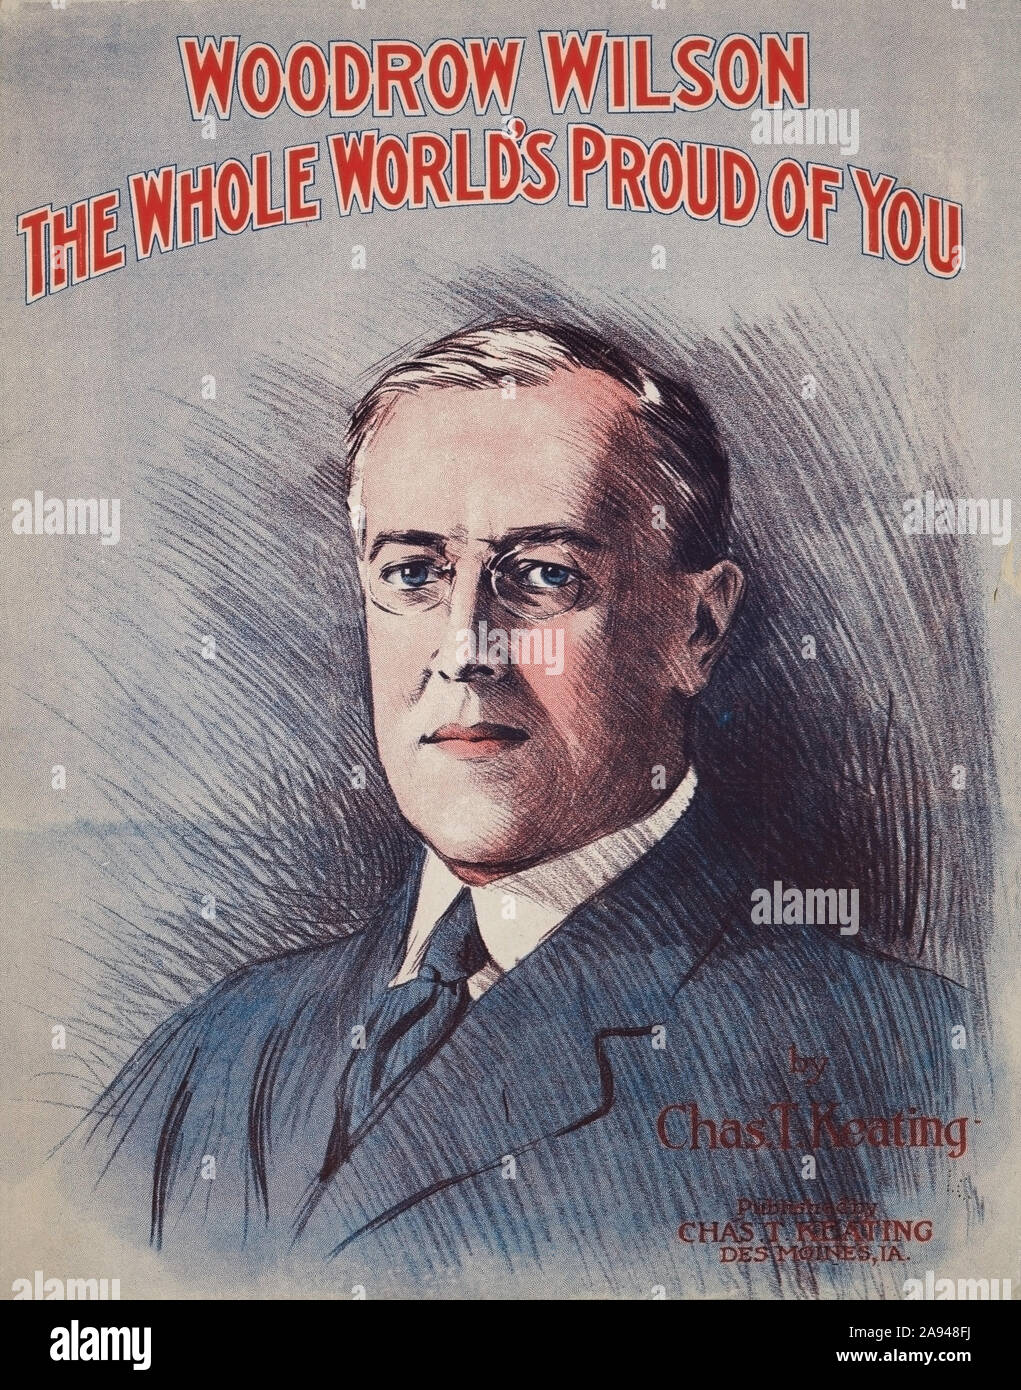 "Woodrow Wilson's die ganze Welt stolz auf Sie", Noten geschrieben und von Charles T. Keating, 1918 veröffentlicht. Stockfoto